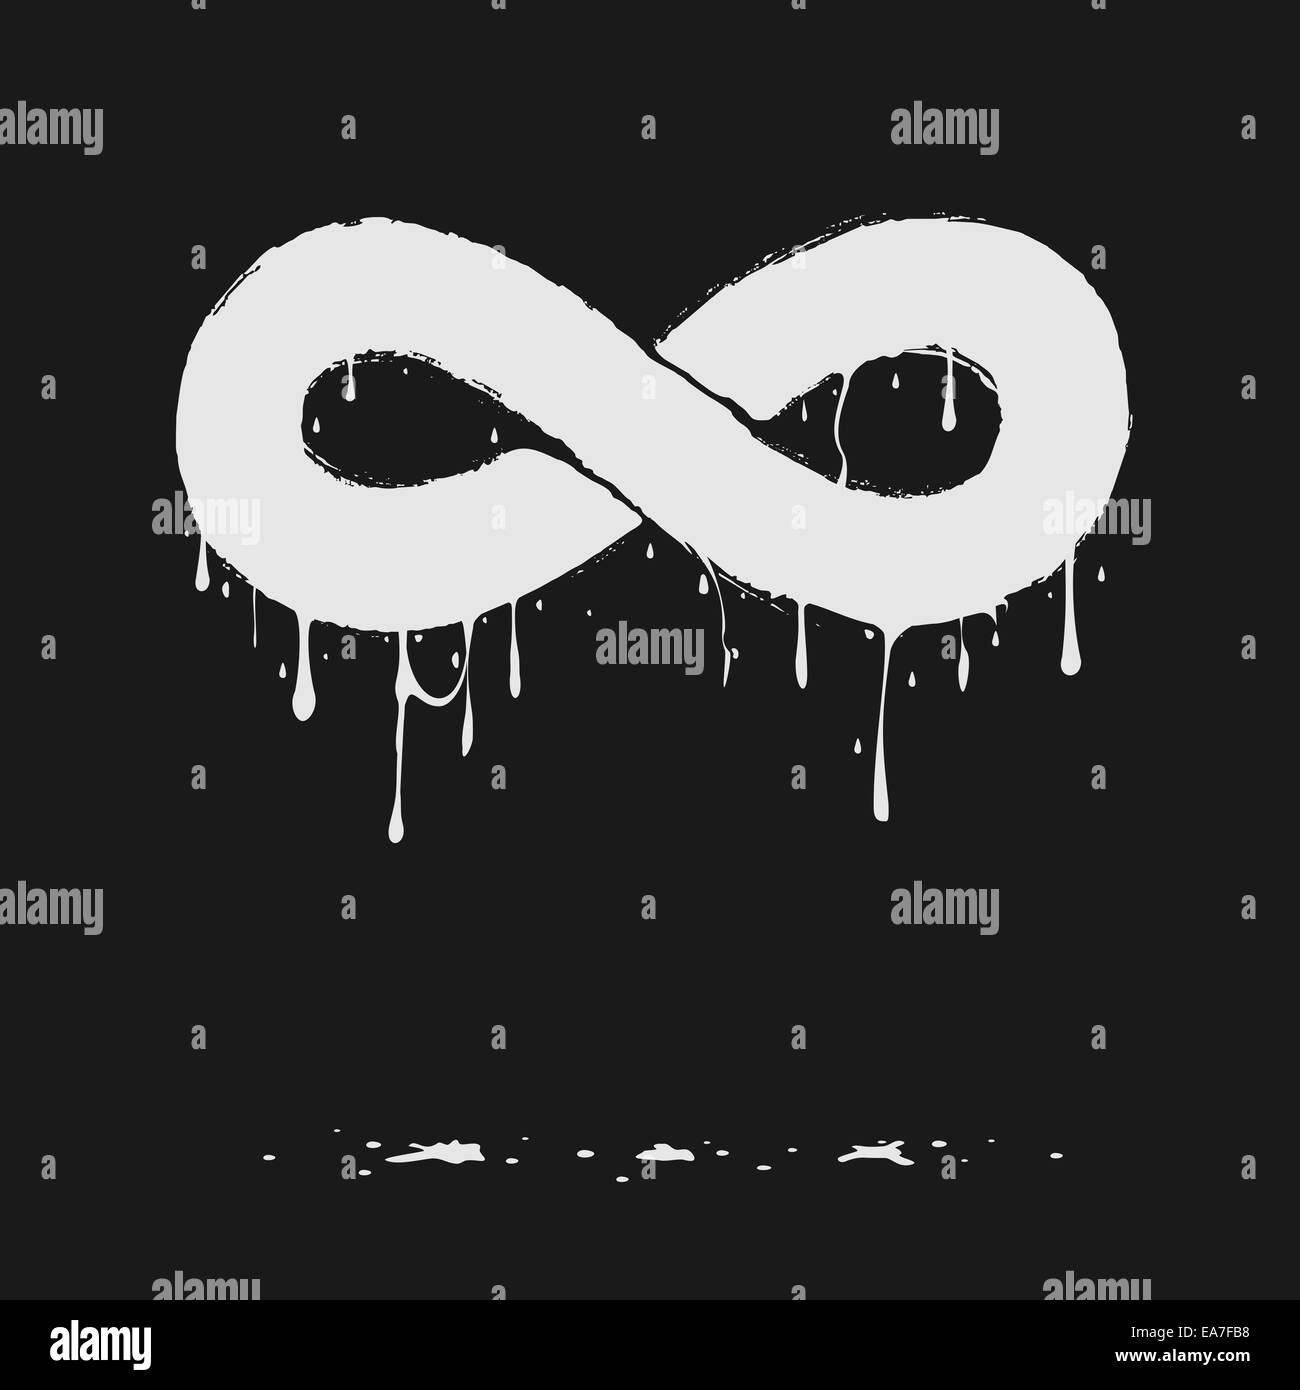 Infinity symbol Stock Photo